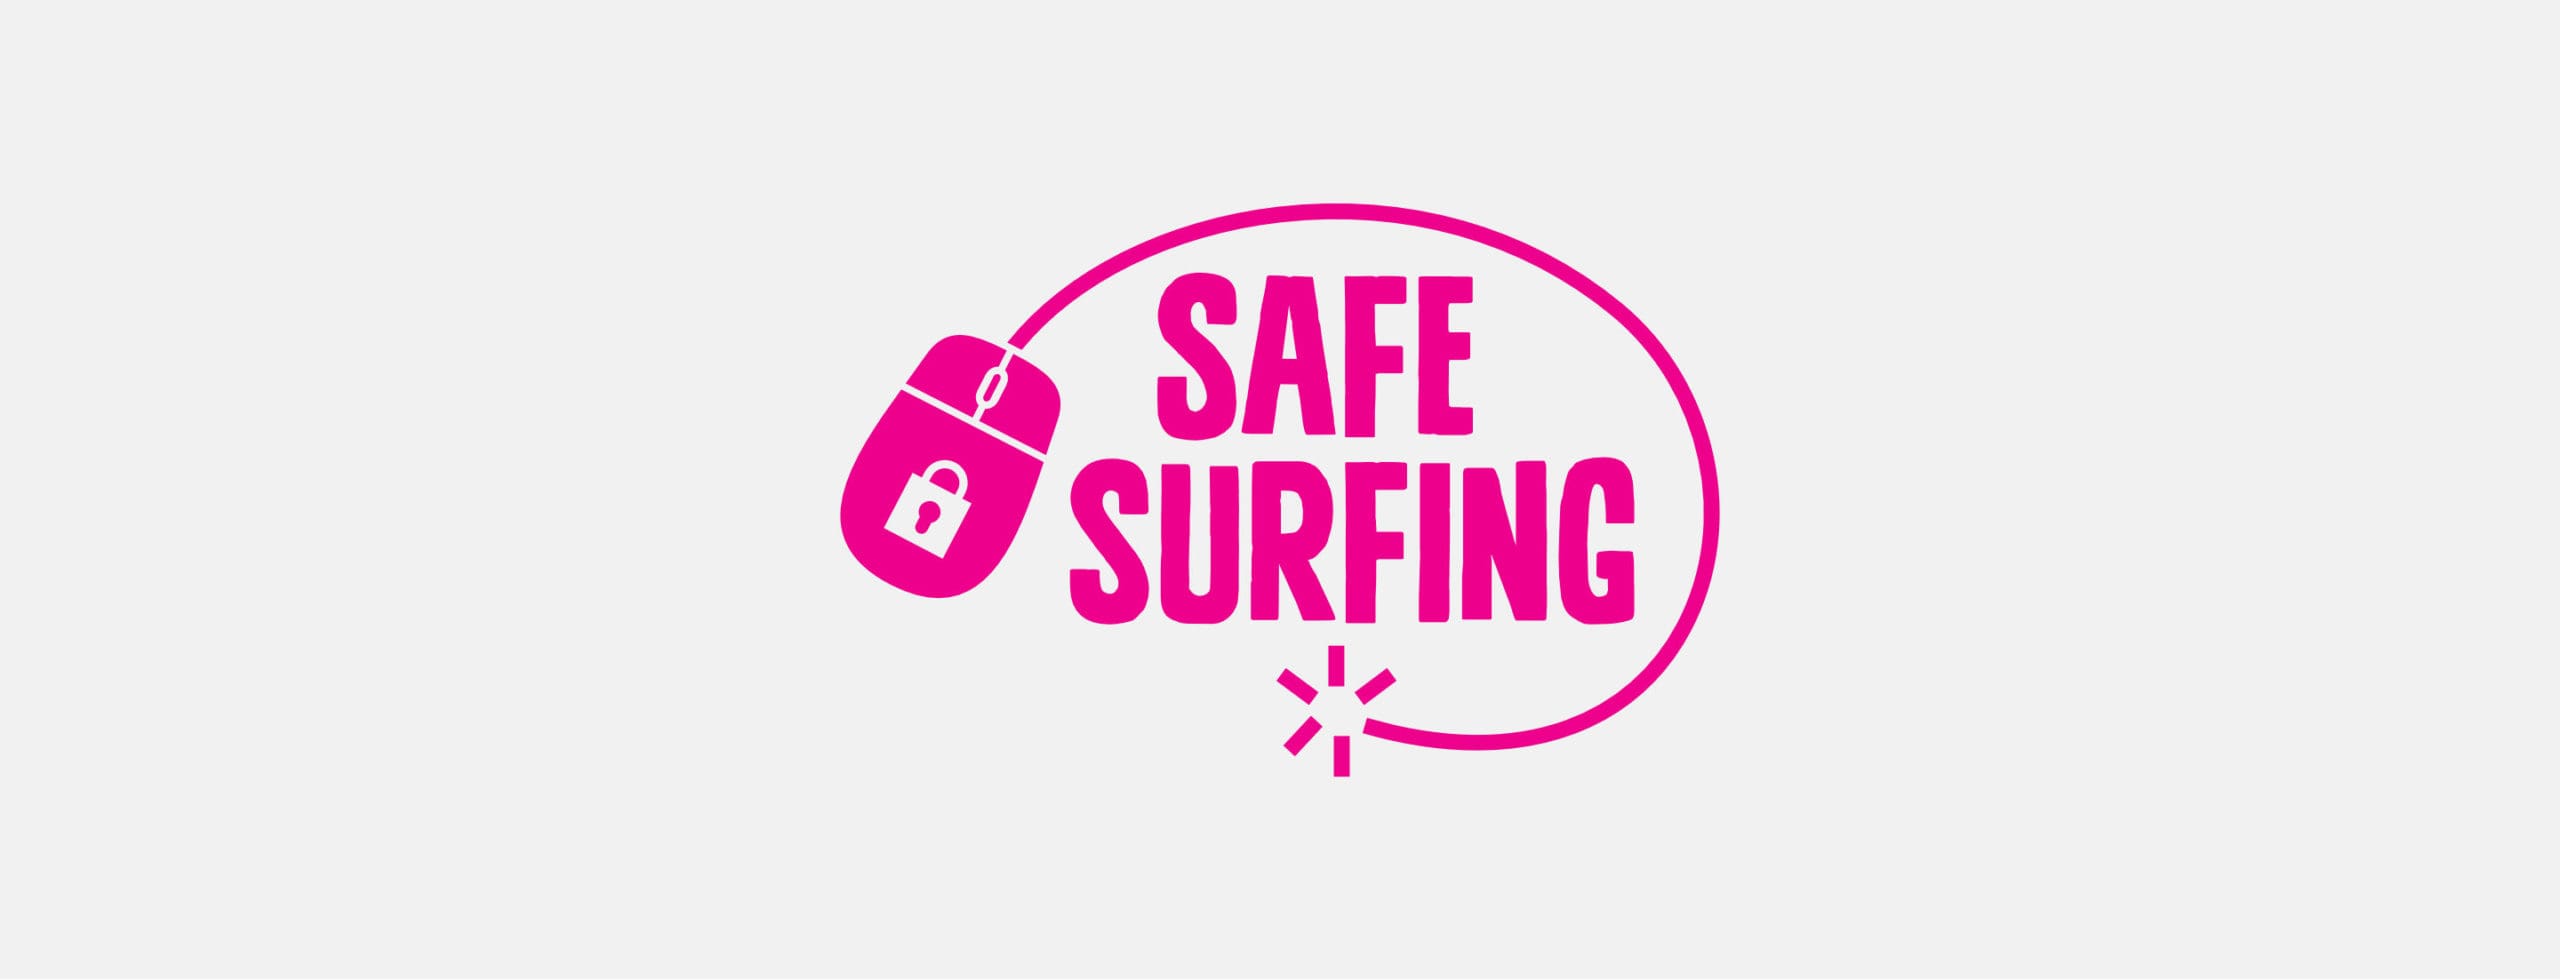 safe surfing graphic